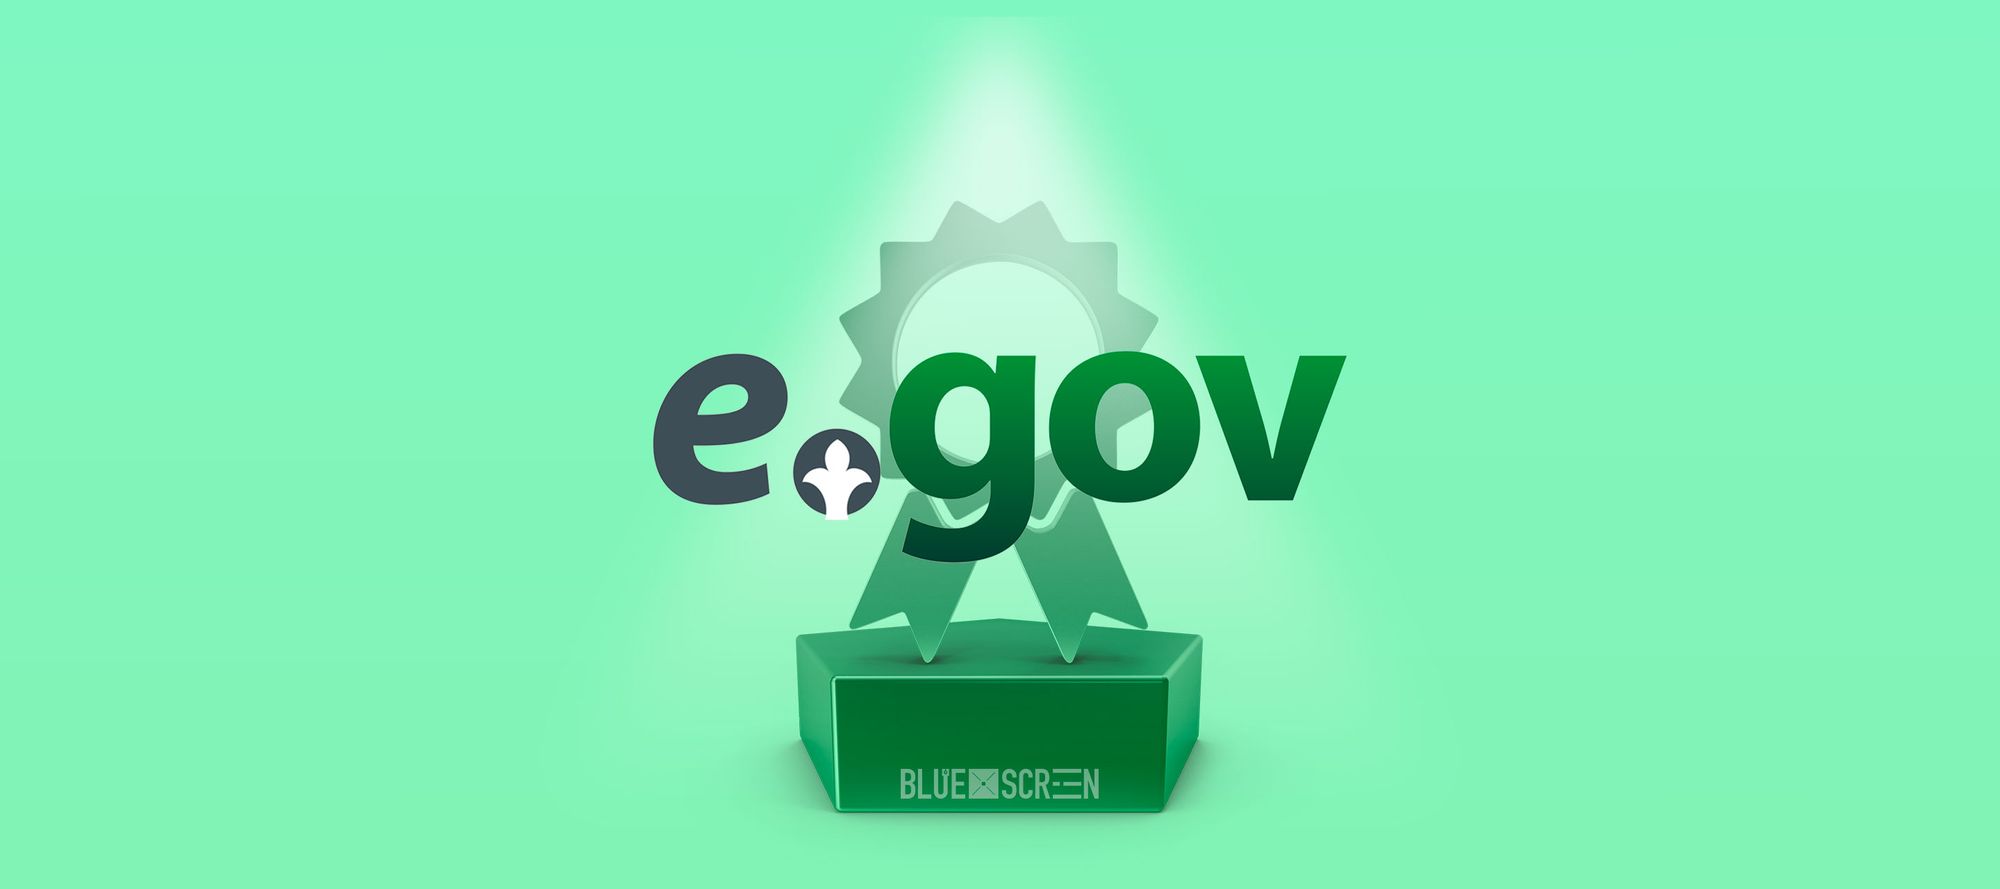 28 место в рейтинге E-Government. Что это значит?